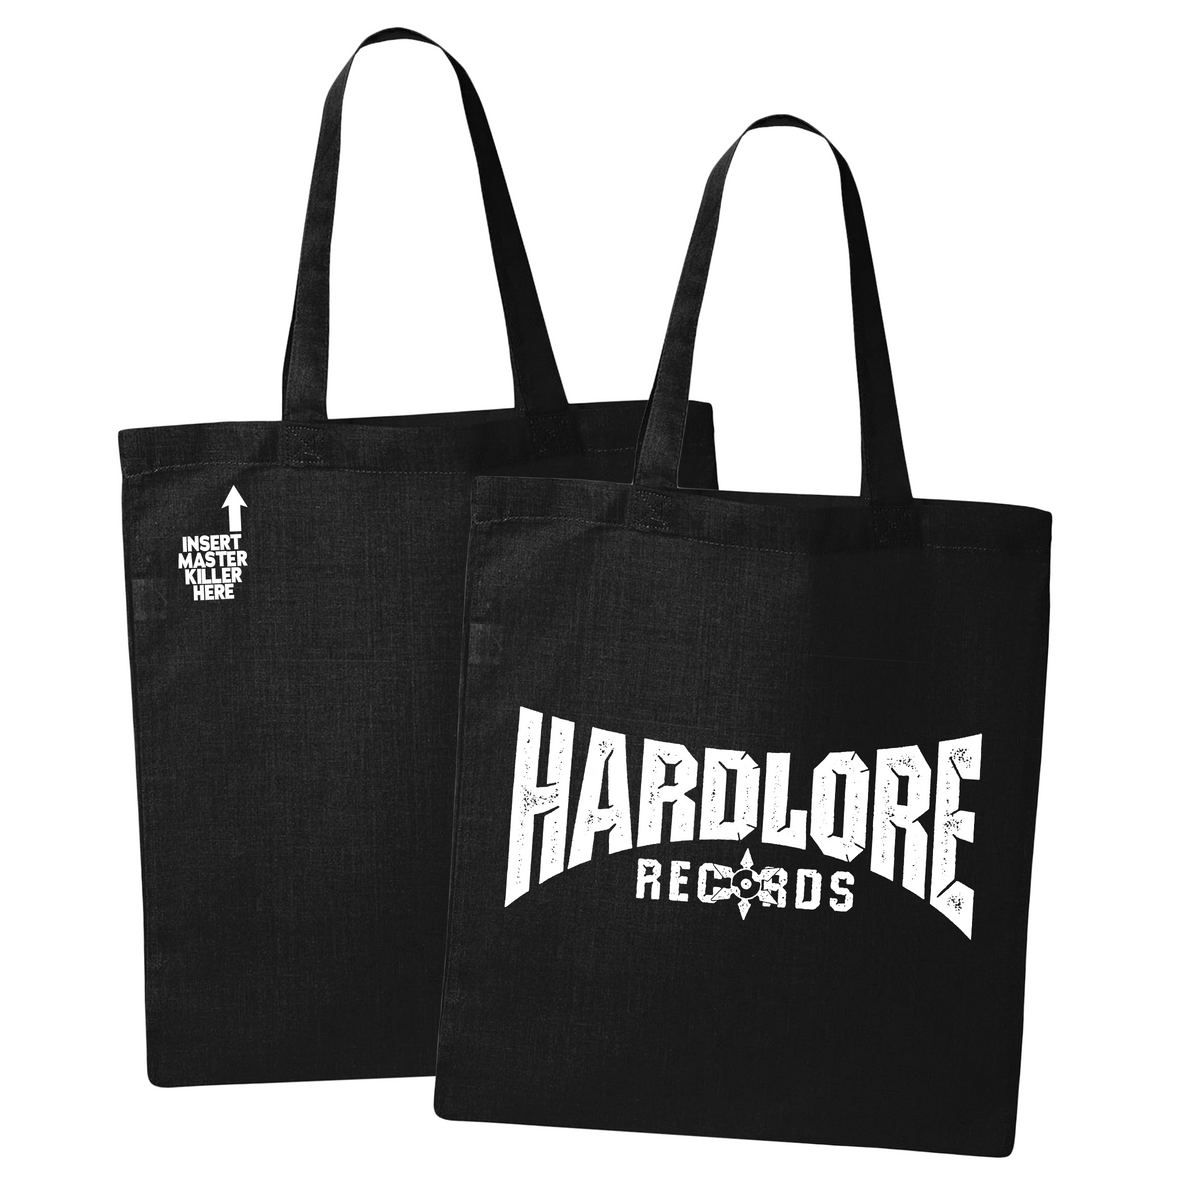 Hardlore Records Tote